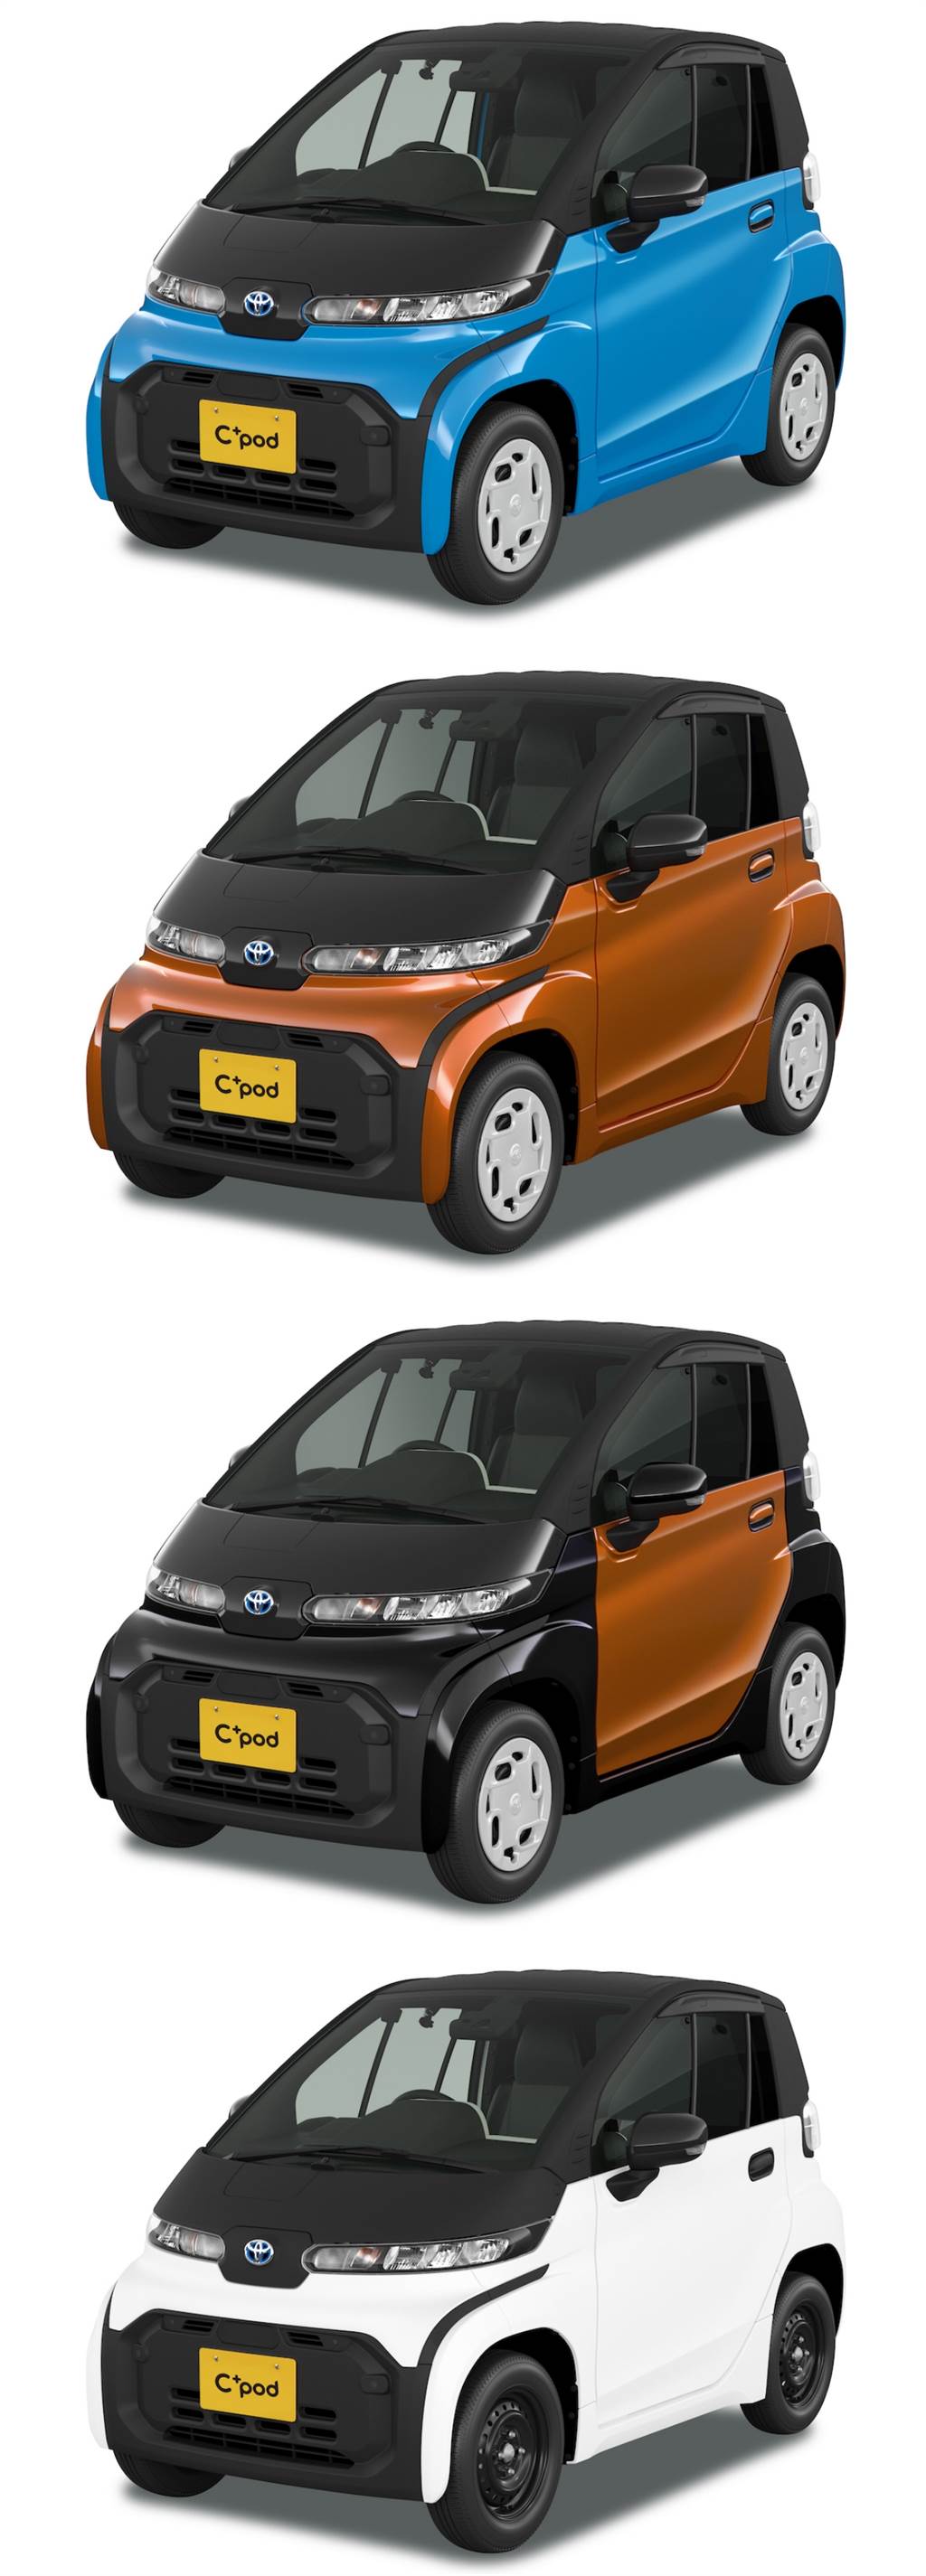 續航力150km、極速60km/h，Toyota 雙人座超小型EV「C＋pod」日本限定販售